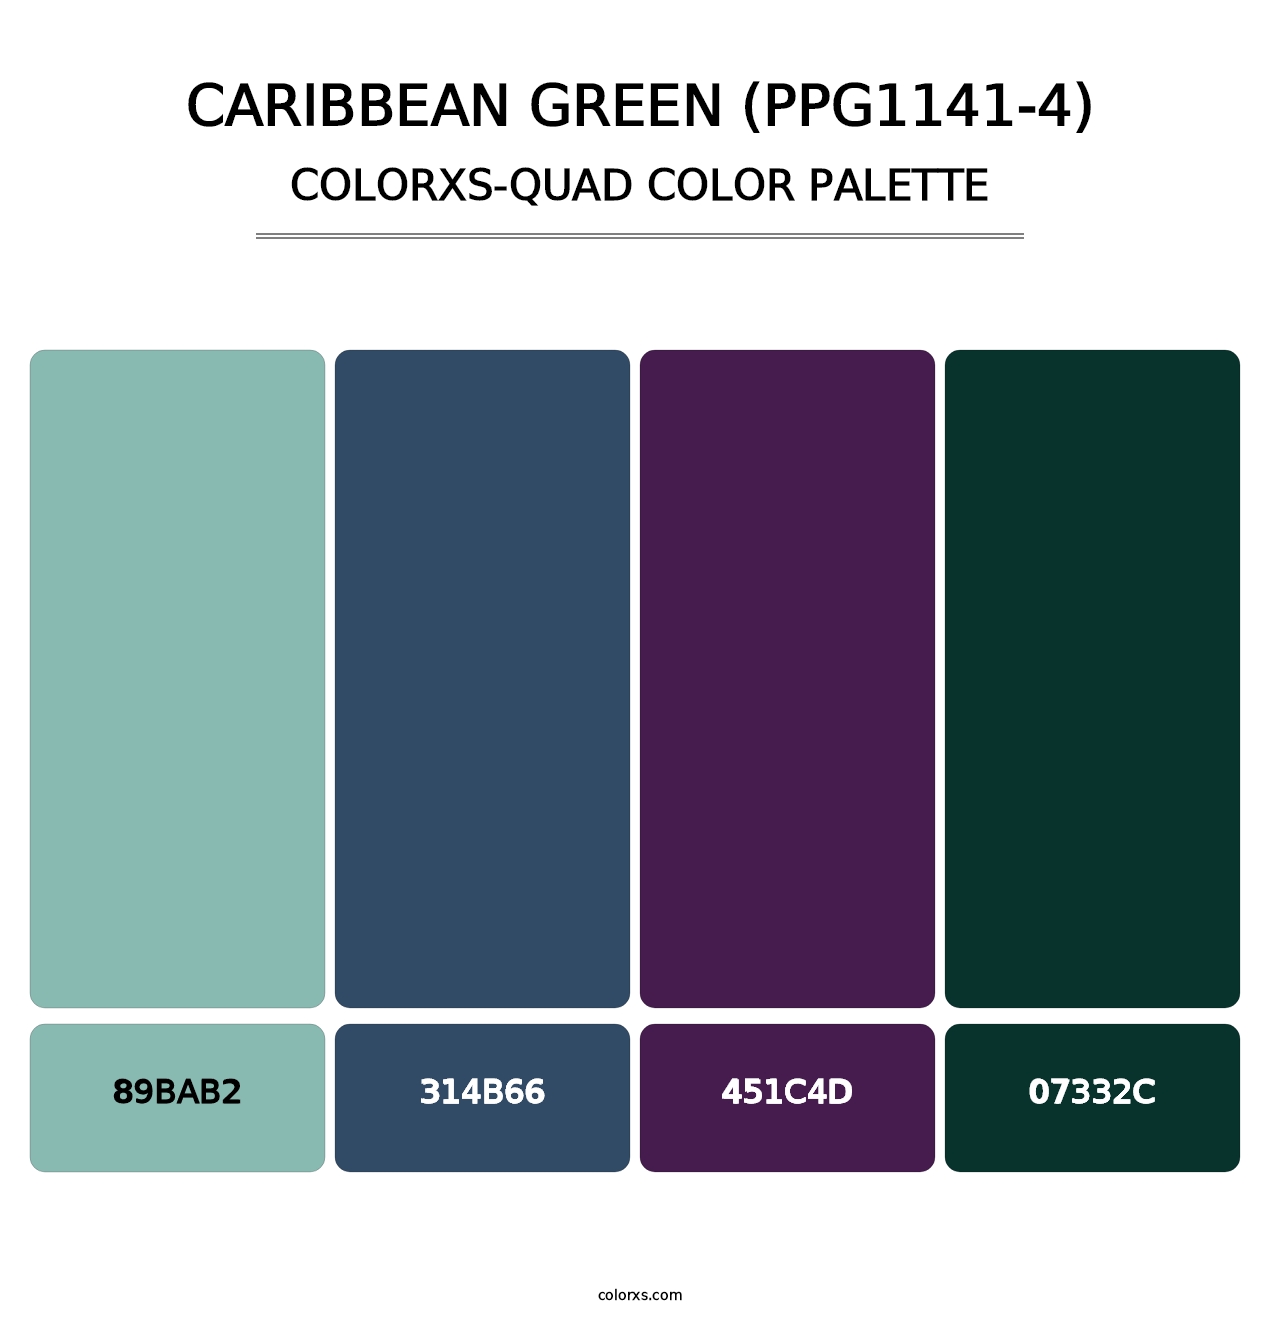 Caribbean Green (PPG1141-4) - Colorxs Quad Palette